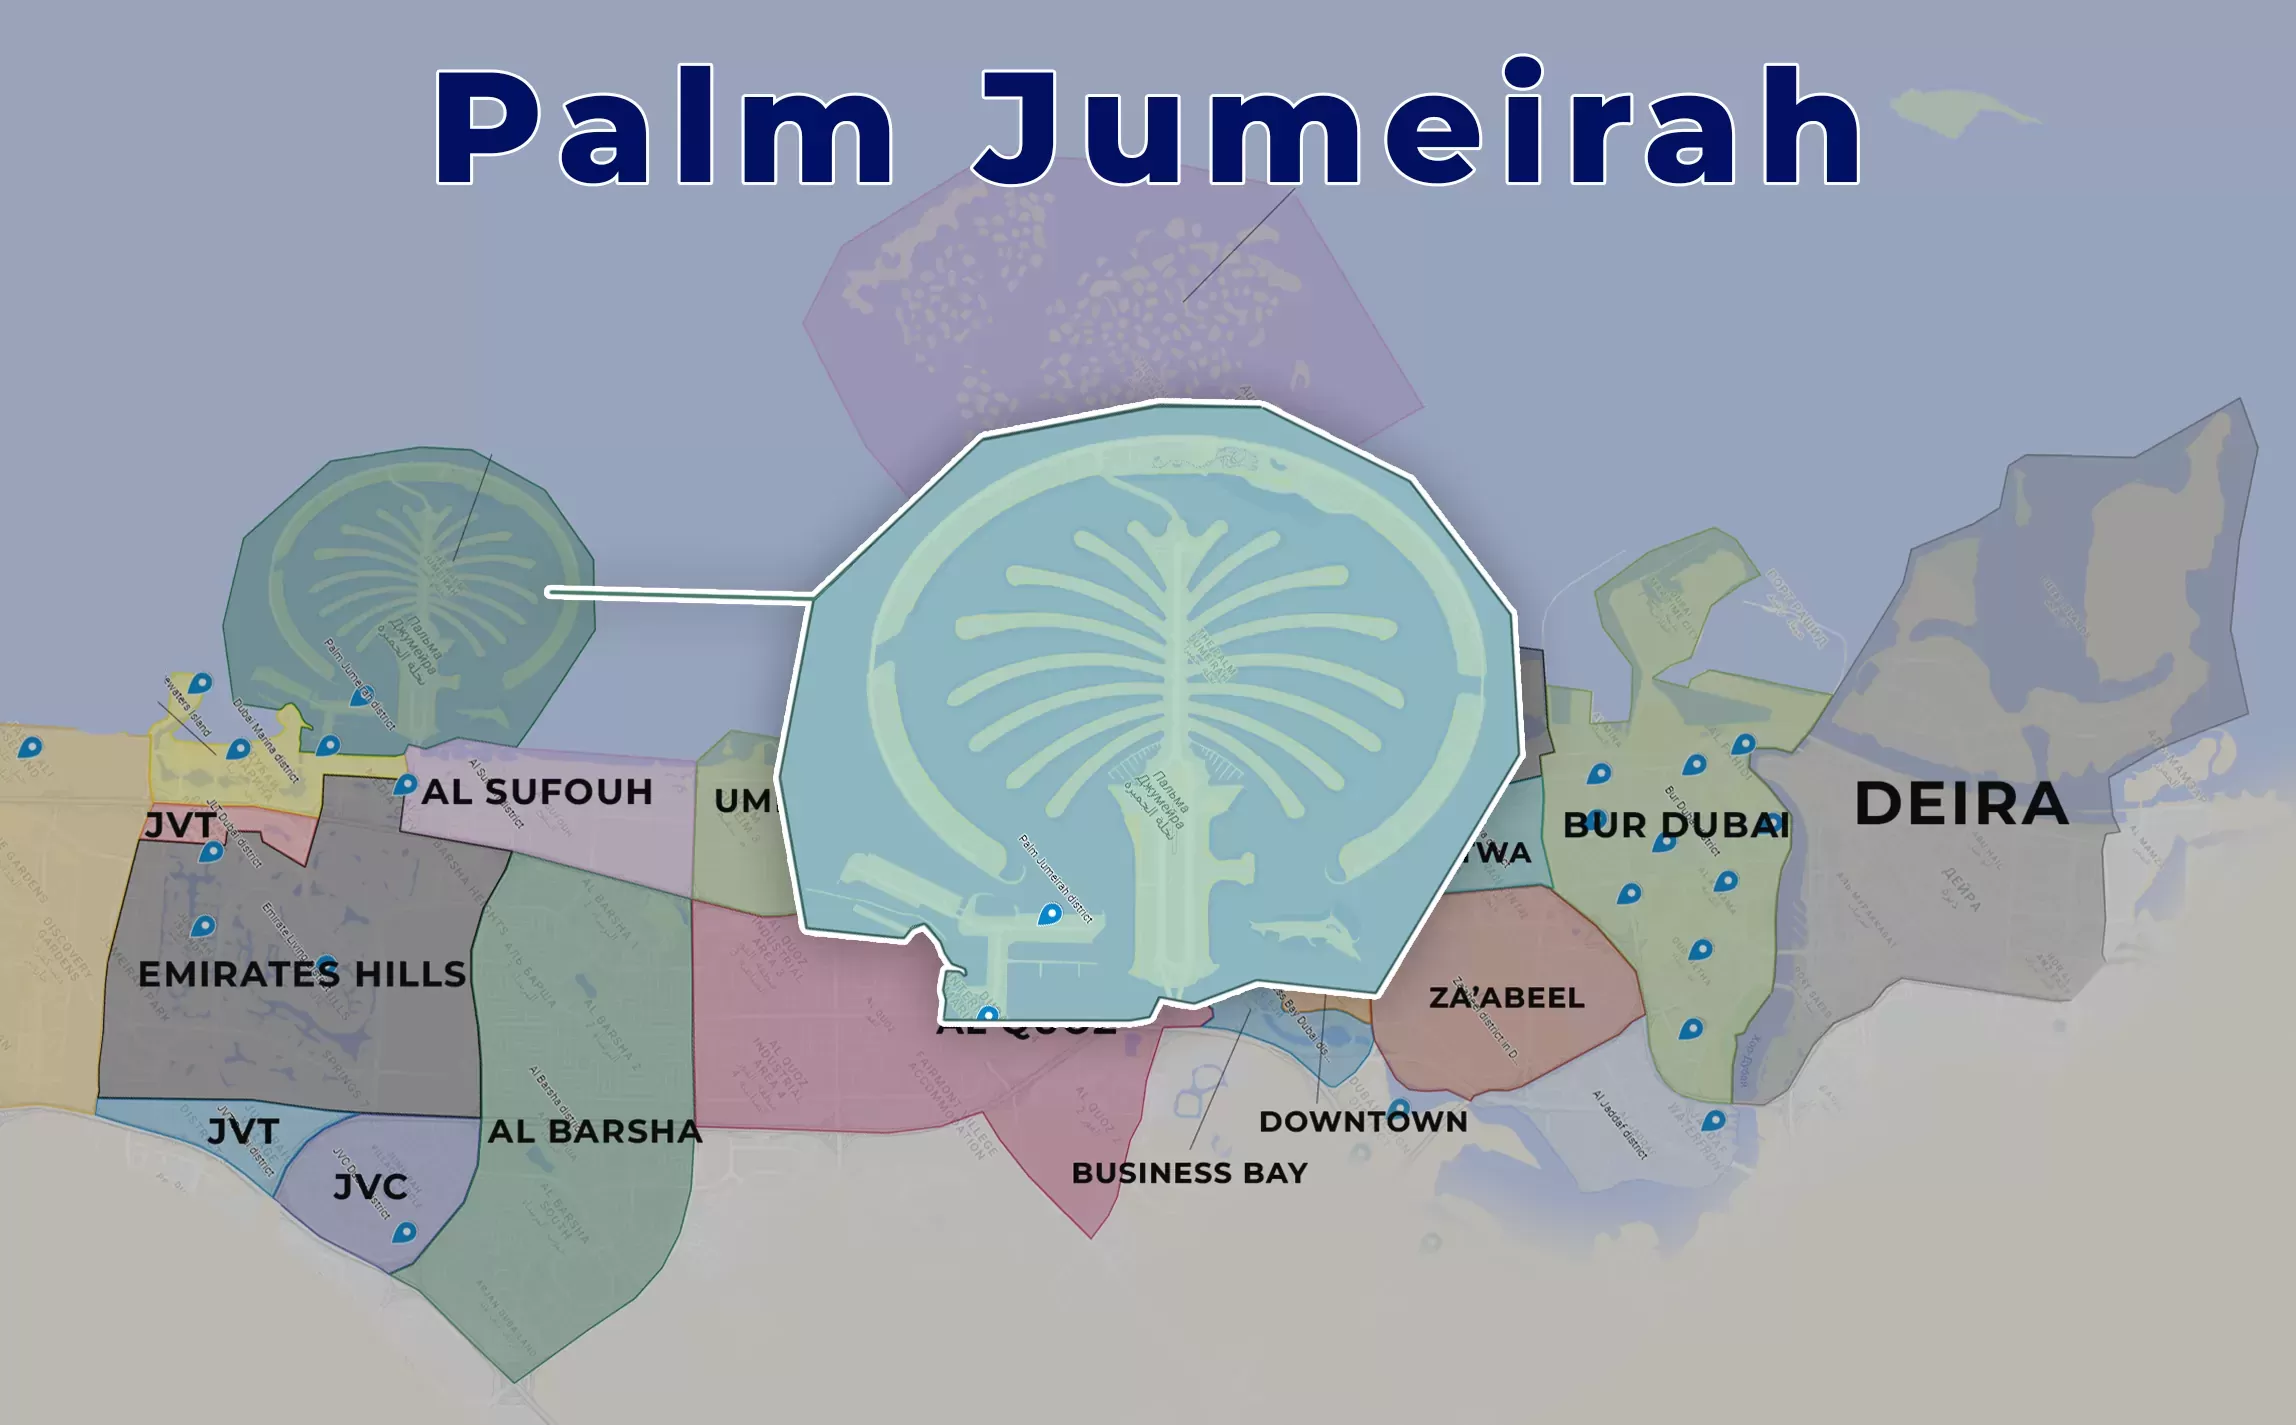 Palm Jumeirah Dubai on the map